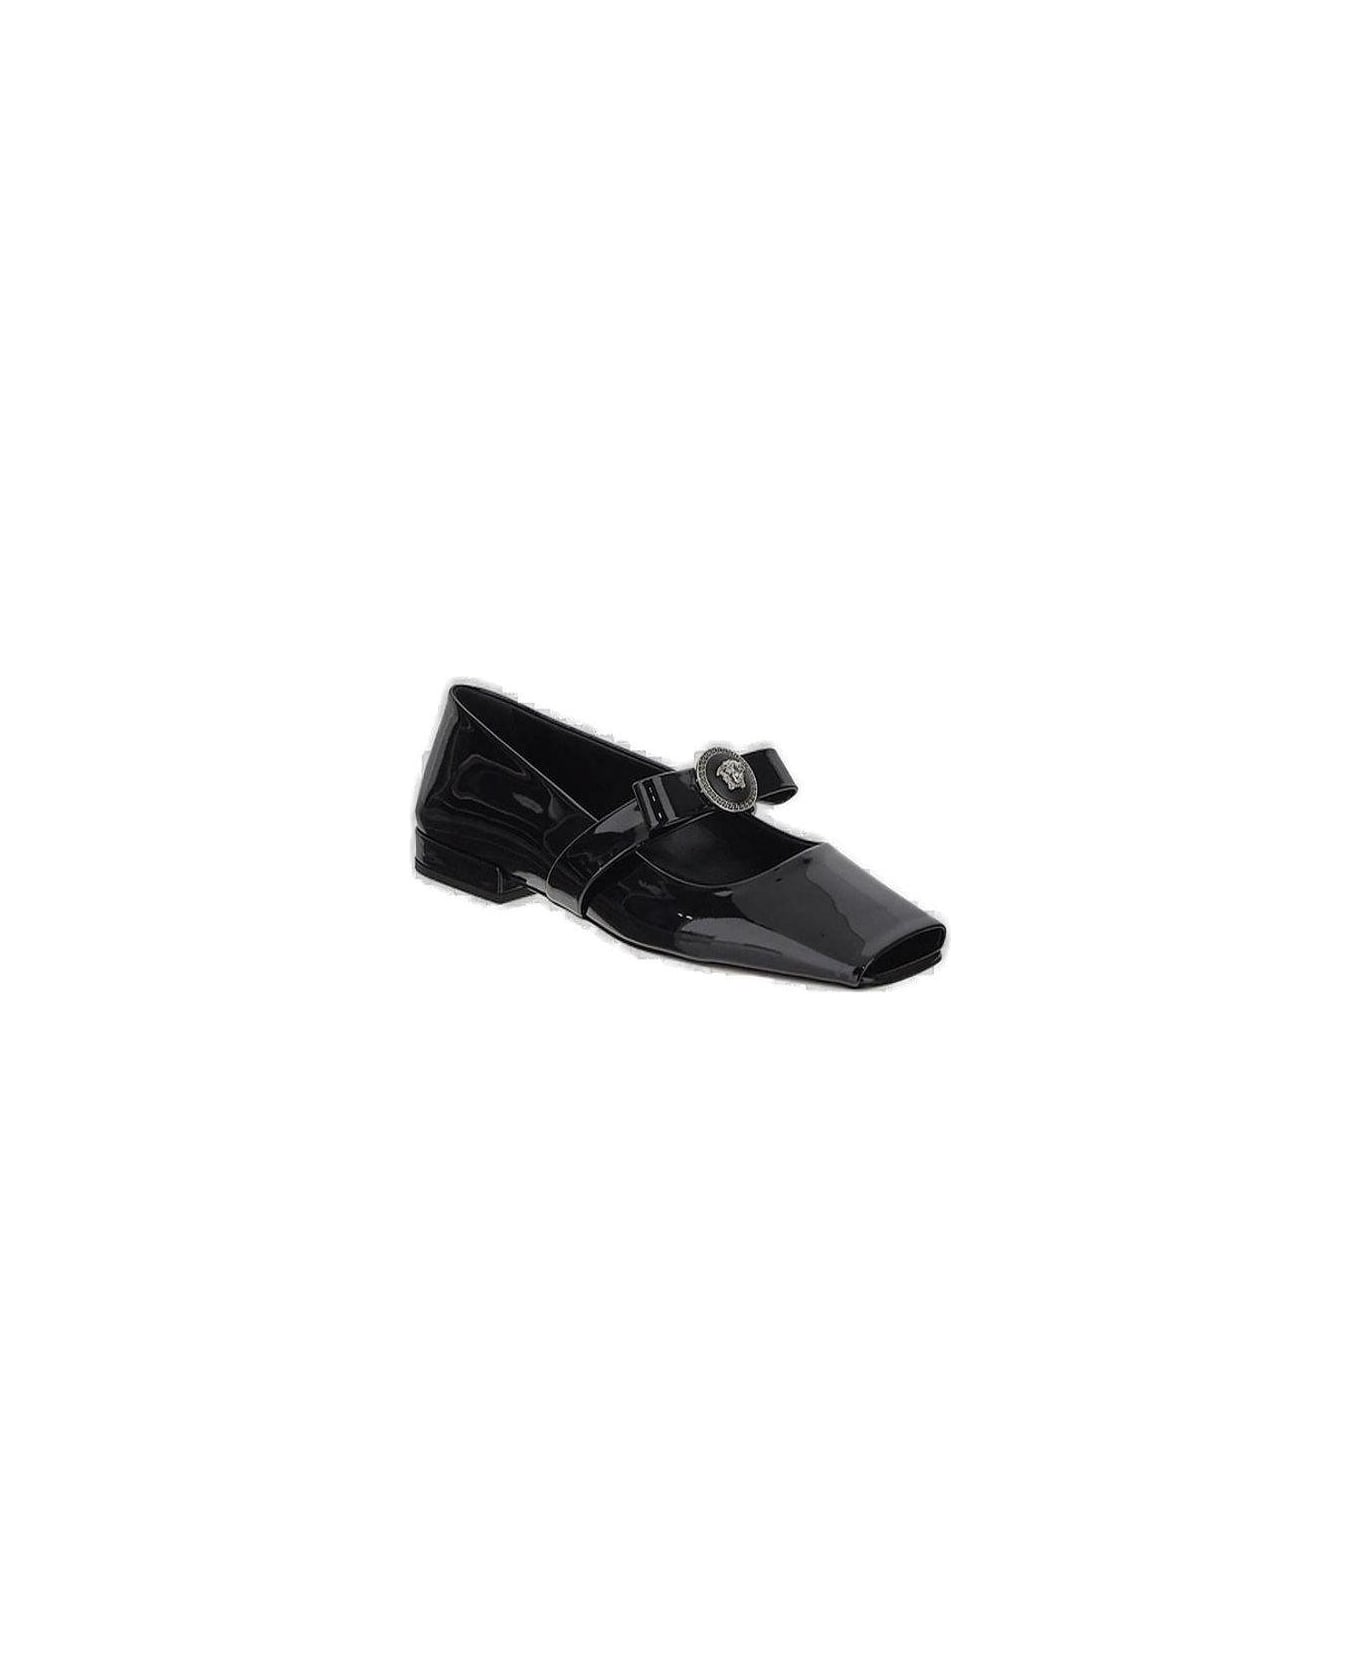 Versace Gianni Ribbon Square-toe Ballerina Shoes - BLACK